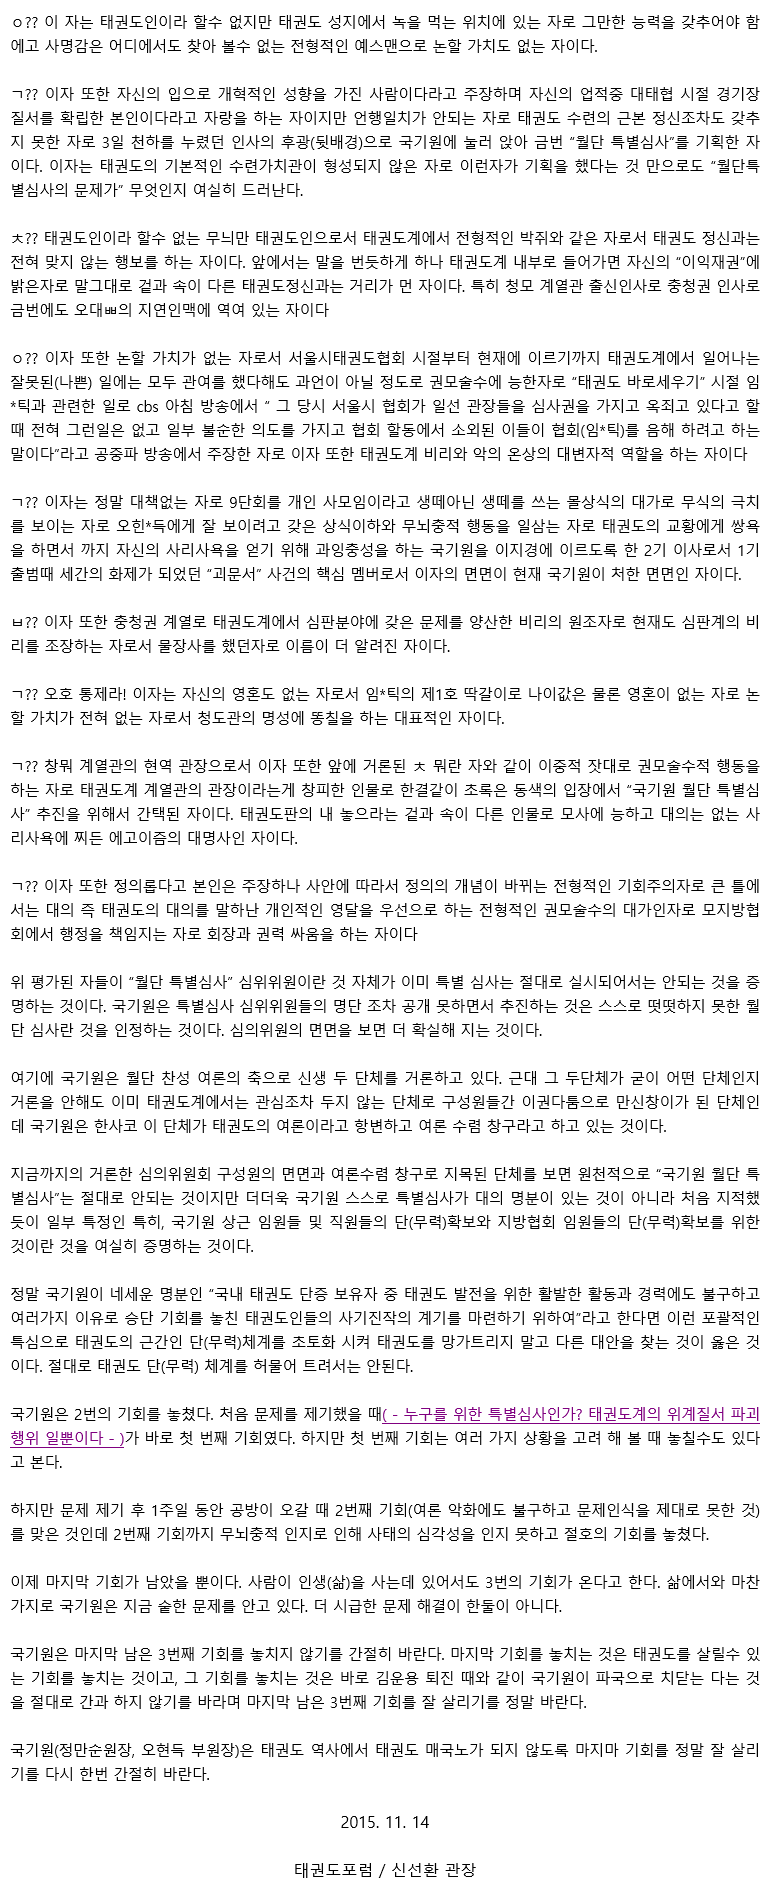 20151114_월단특별심사철회의마지막기회를놓치지않기를바란다_02.gif